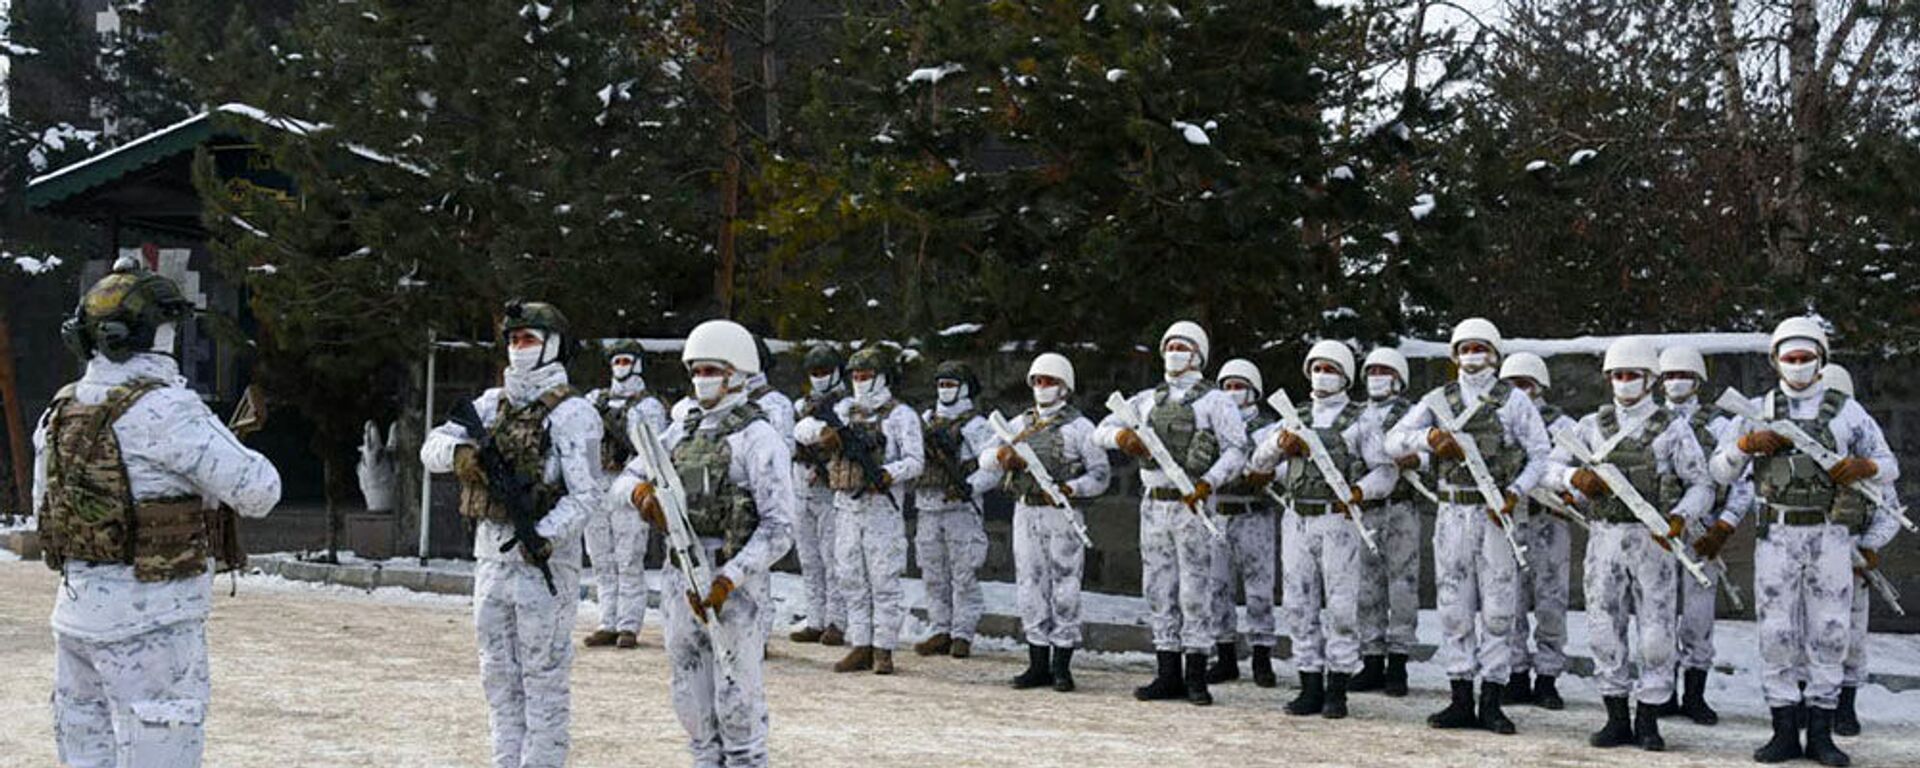 Азербайджанские военнослужащие на «Зимних учениях 2021», проходящих в Турецкой Республике - Sputnik Азербайджан, 1920, 04.02.2021